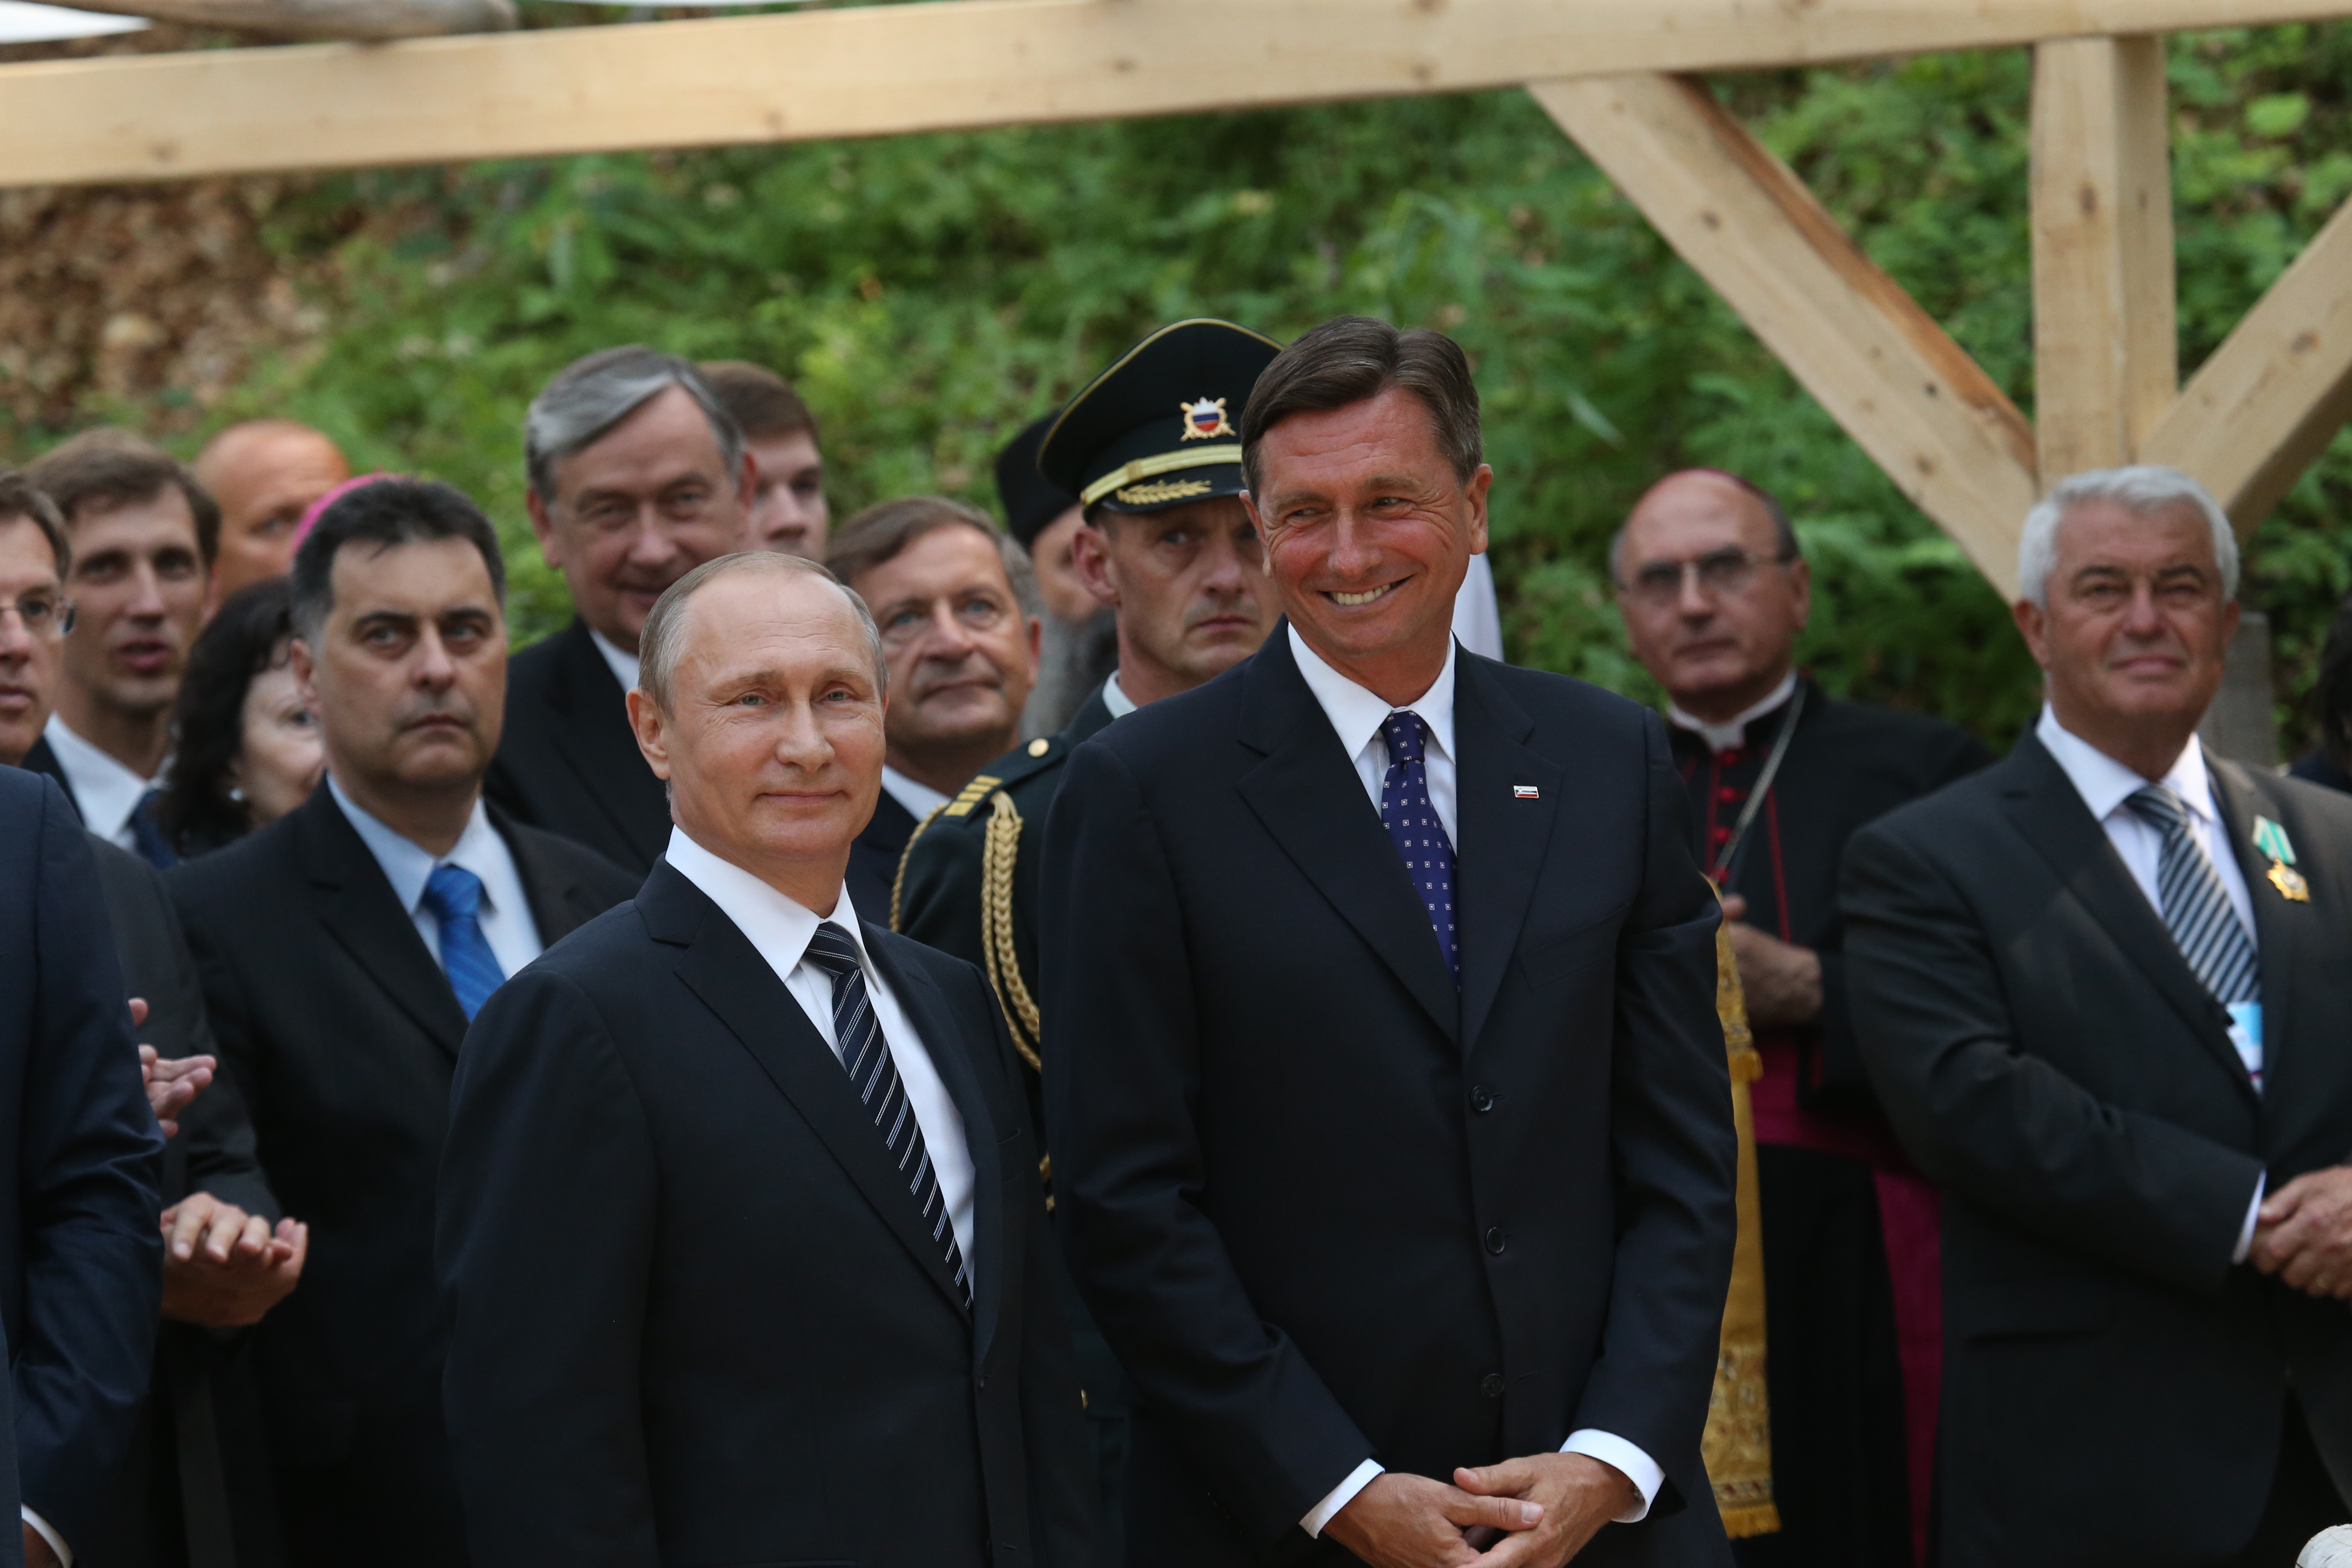 Ruski predsednik Vladimir Putin in njegov gostitelj, slovenski predsednik Borut Pahor.